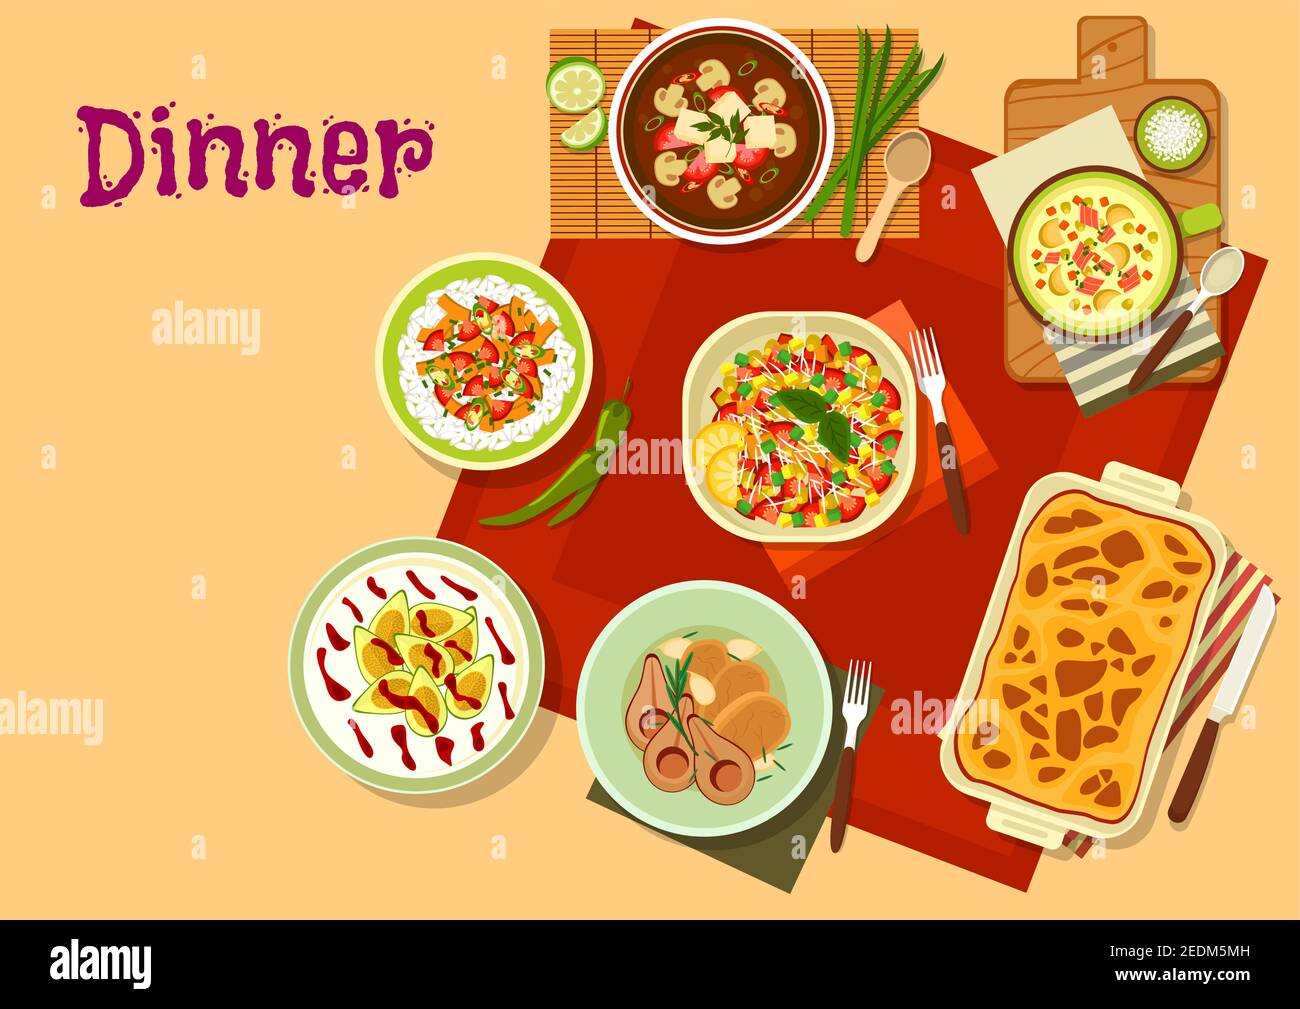 Le dîner est une icône de salade de légumes, soupe aux champignons vietnamiens, porc cuit à la poire, soupe au fromage de légumes au bacon, cocotte d'aubergines, cheesecake Illustration de Vecteur